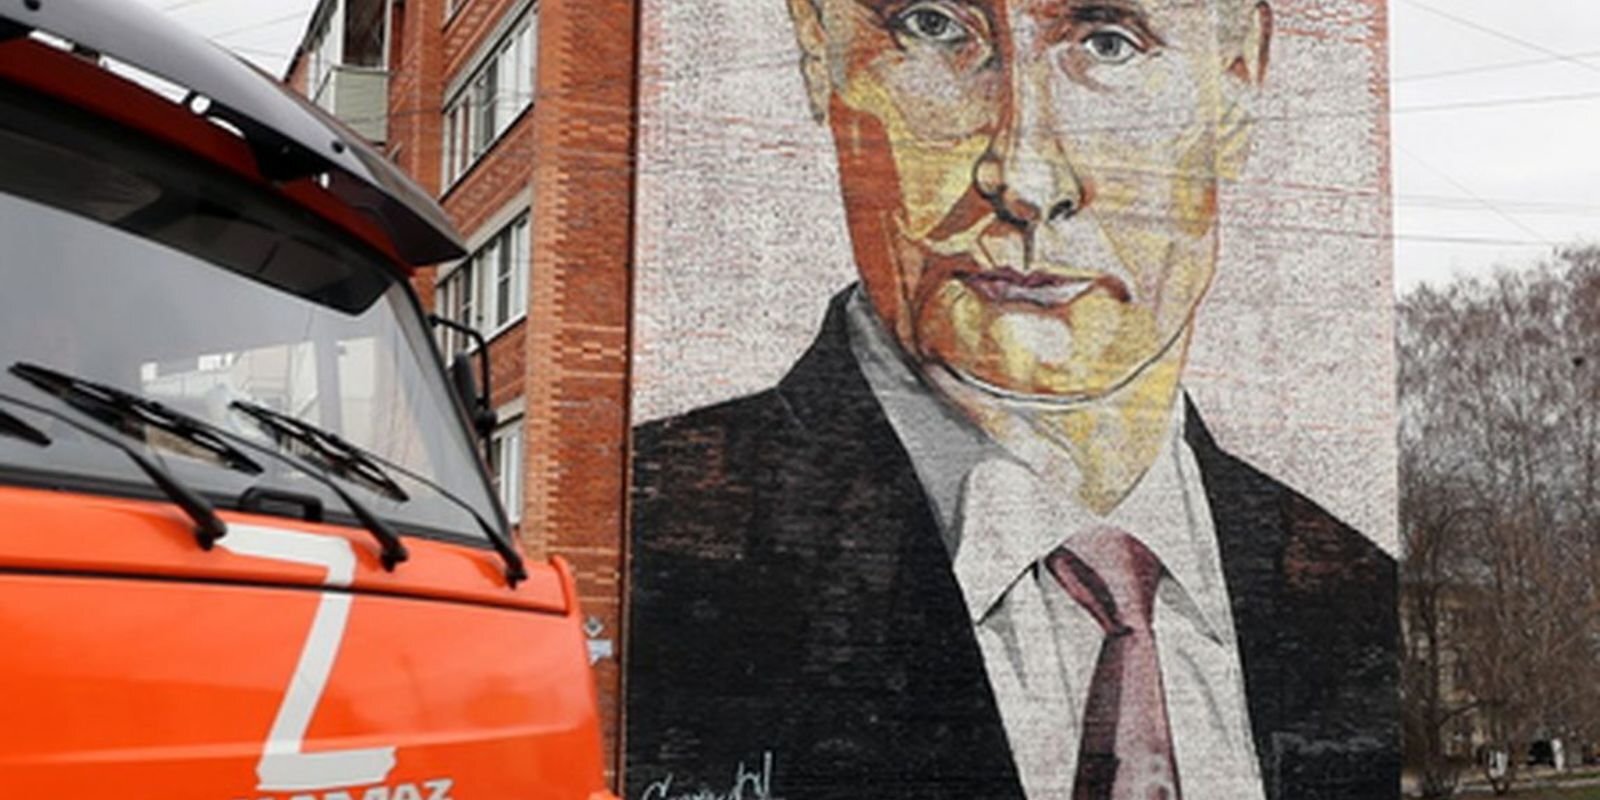 Франкенштейн, или новый СССР. Есть ли идеология у путинского режима?